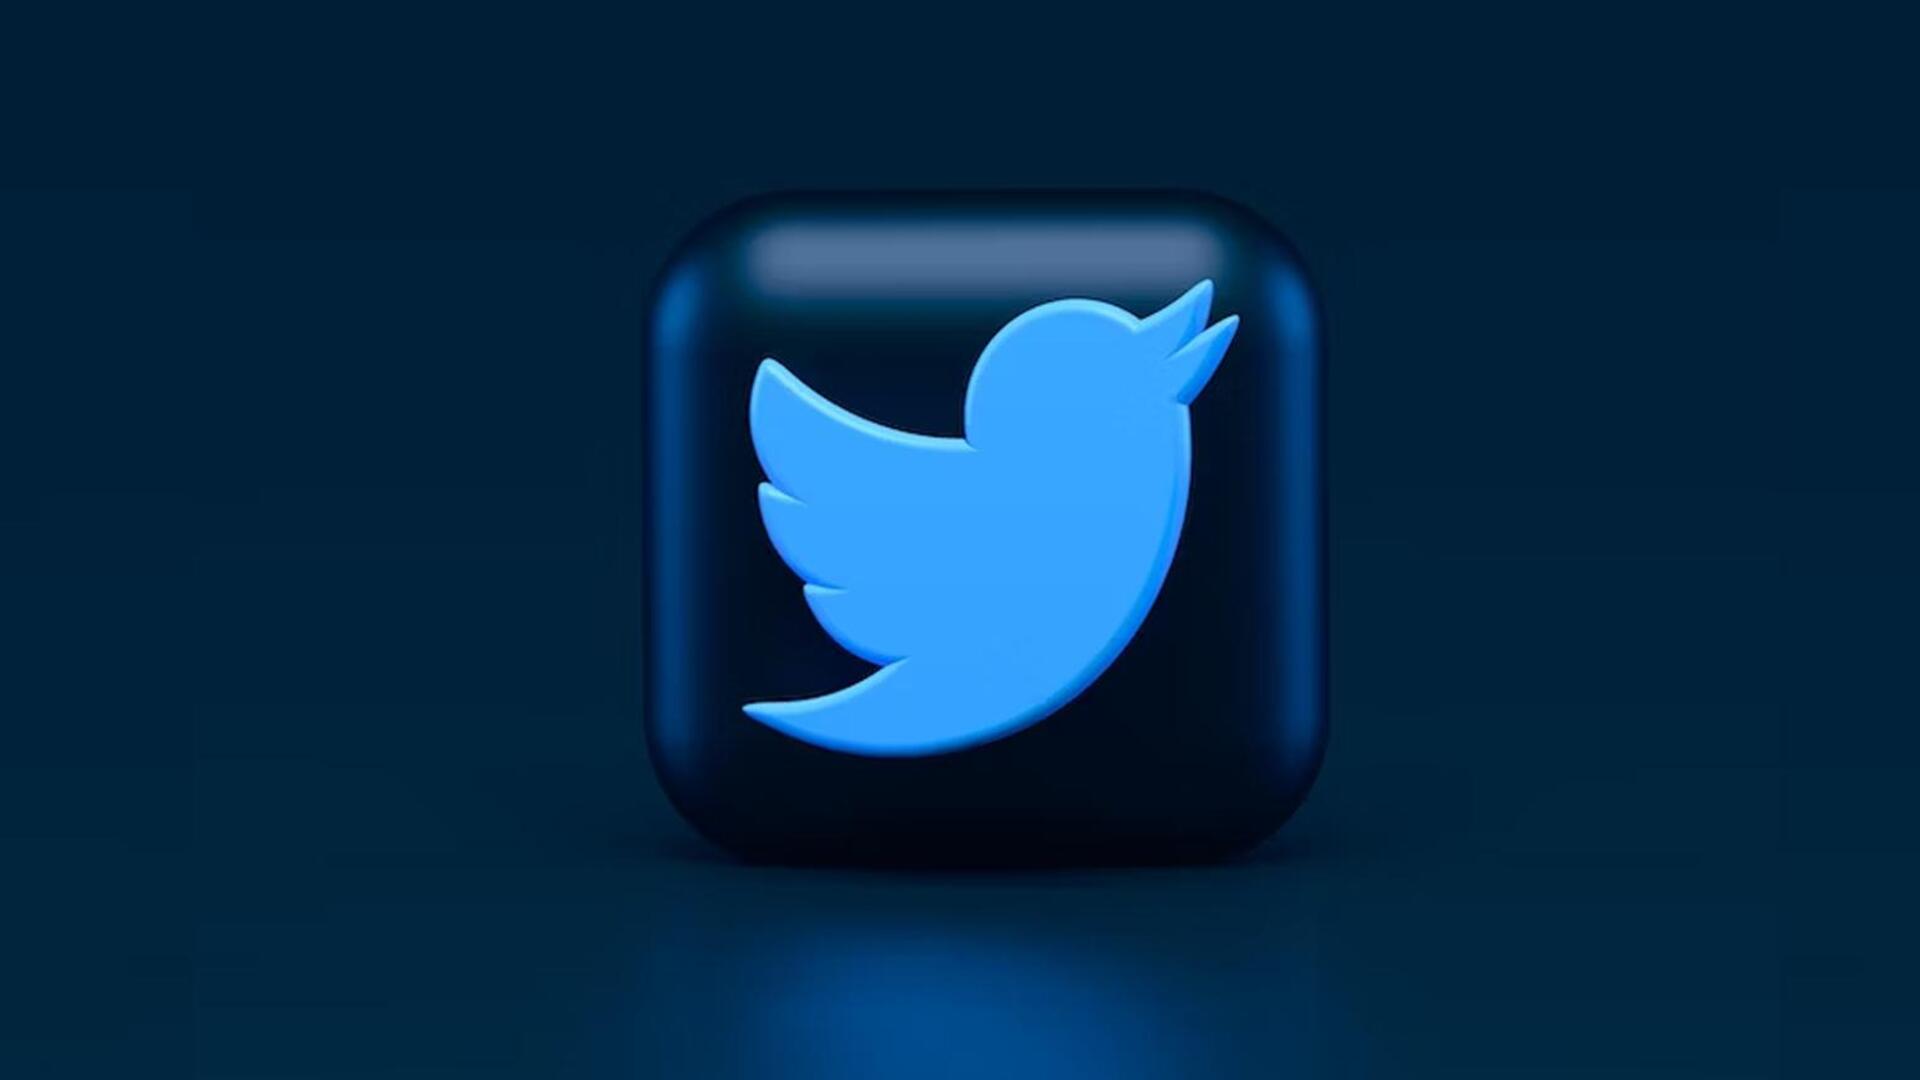 ट्विटर यूजर्स जल्द अलग-अलग आर्टिकल के लिए पब्लिशर्स को कर सकेंगे भुगतान 